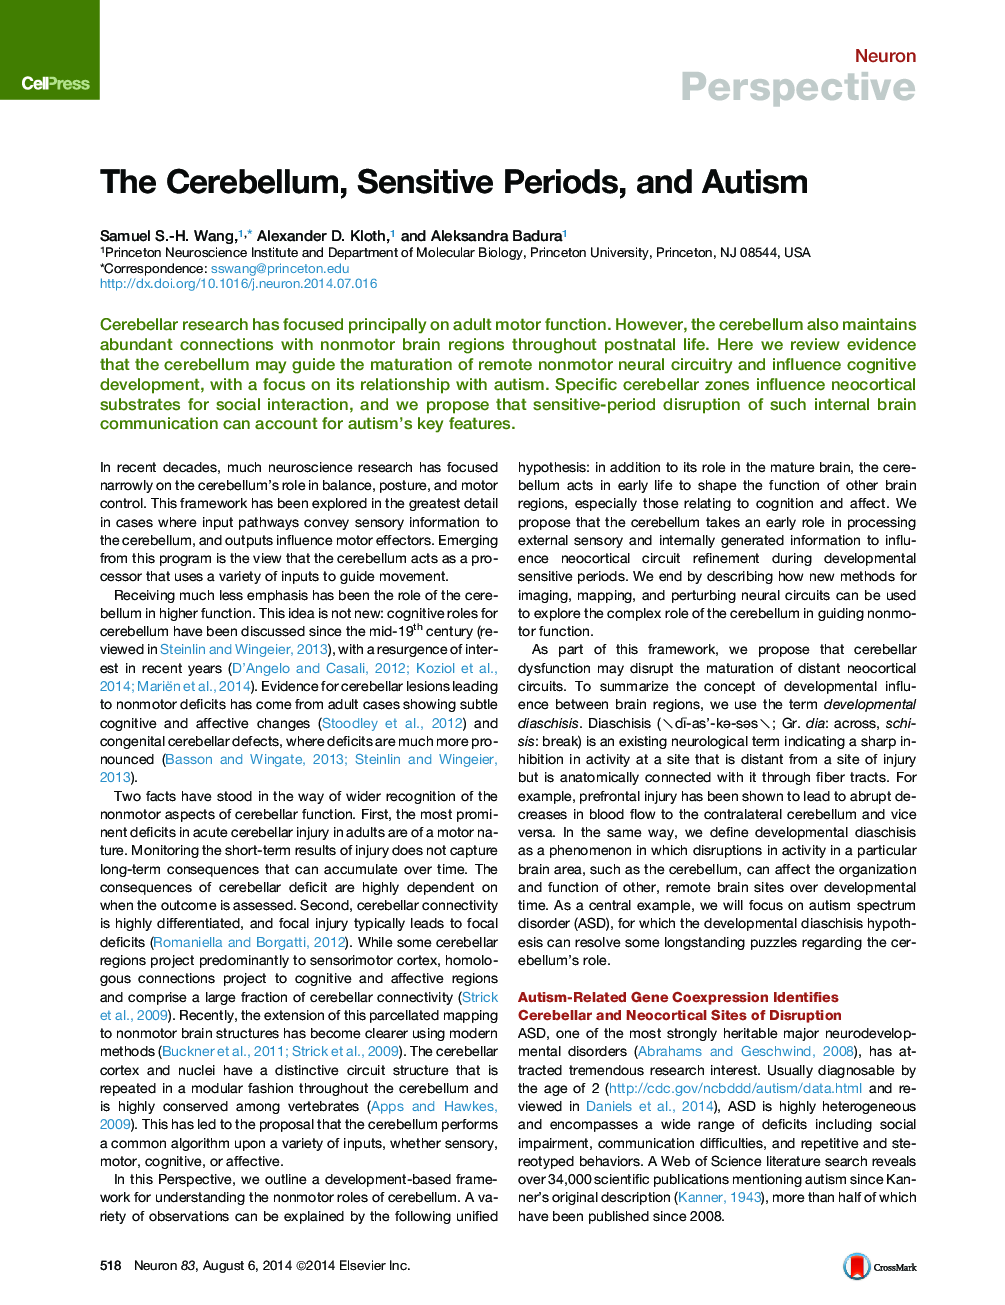 The Cerebellum, Sensitive Periods, and Autism